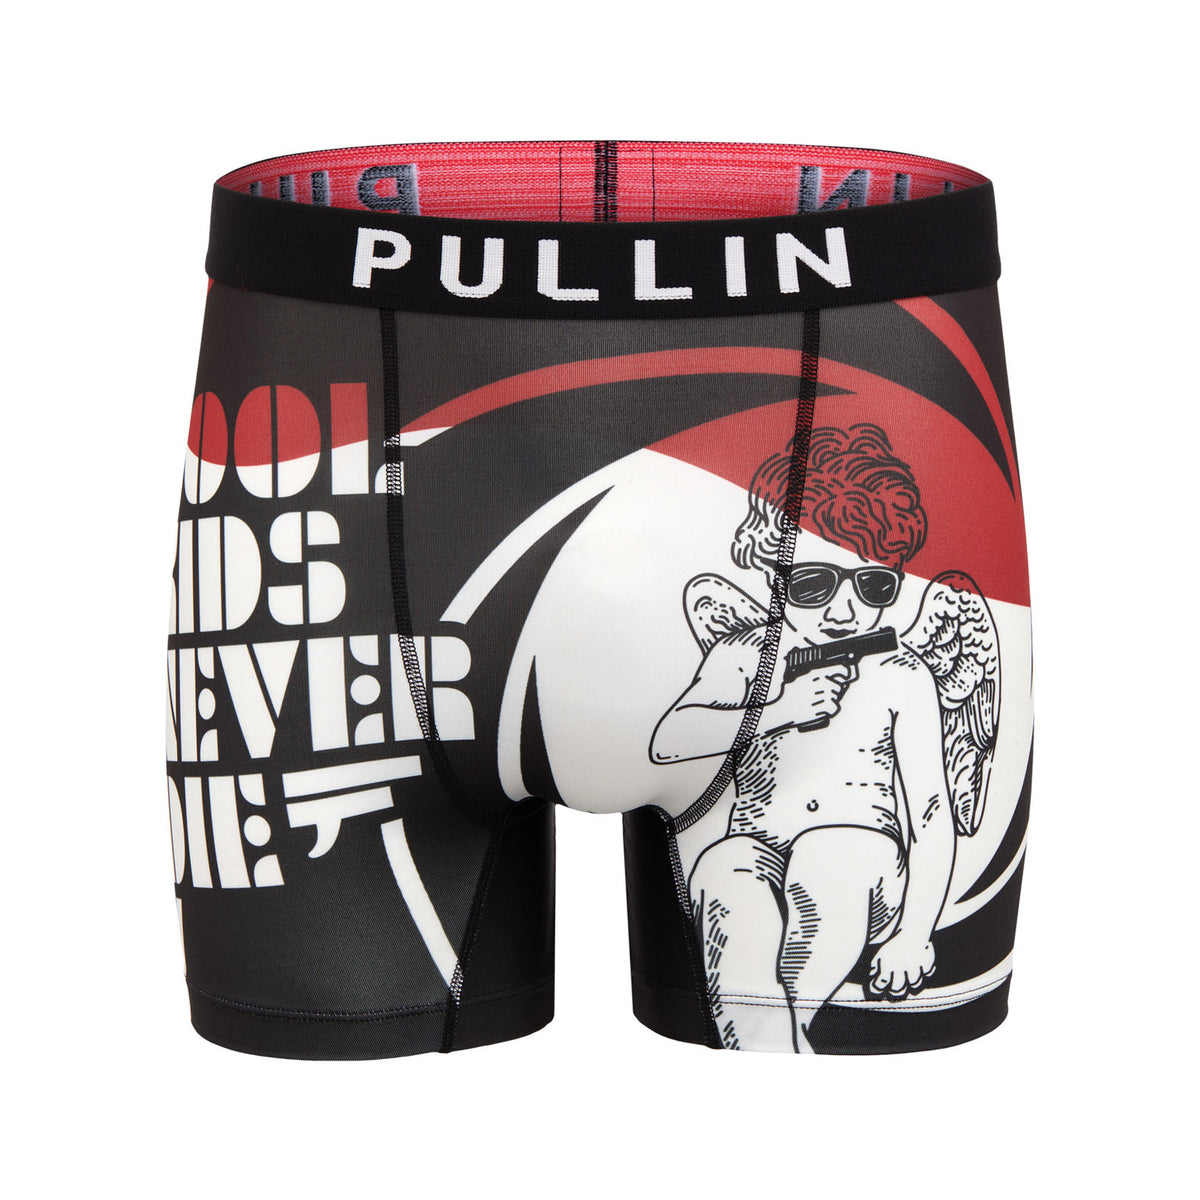 MULTICOLORED MEN'S TRUNK FASHION 2 SAVETHEPLANET - Men's underwear